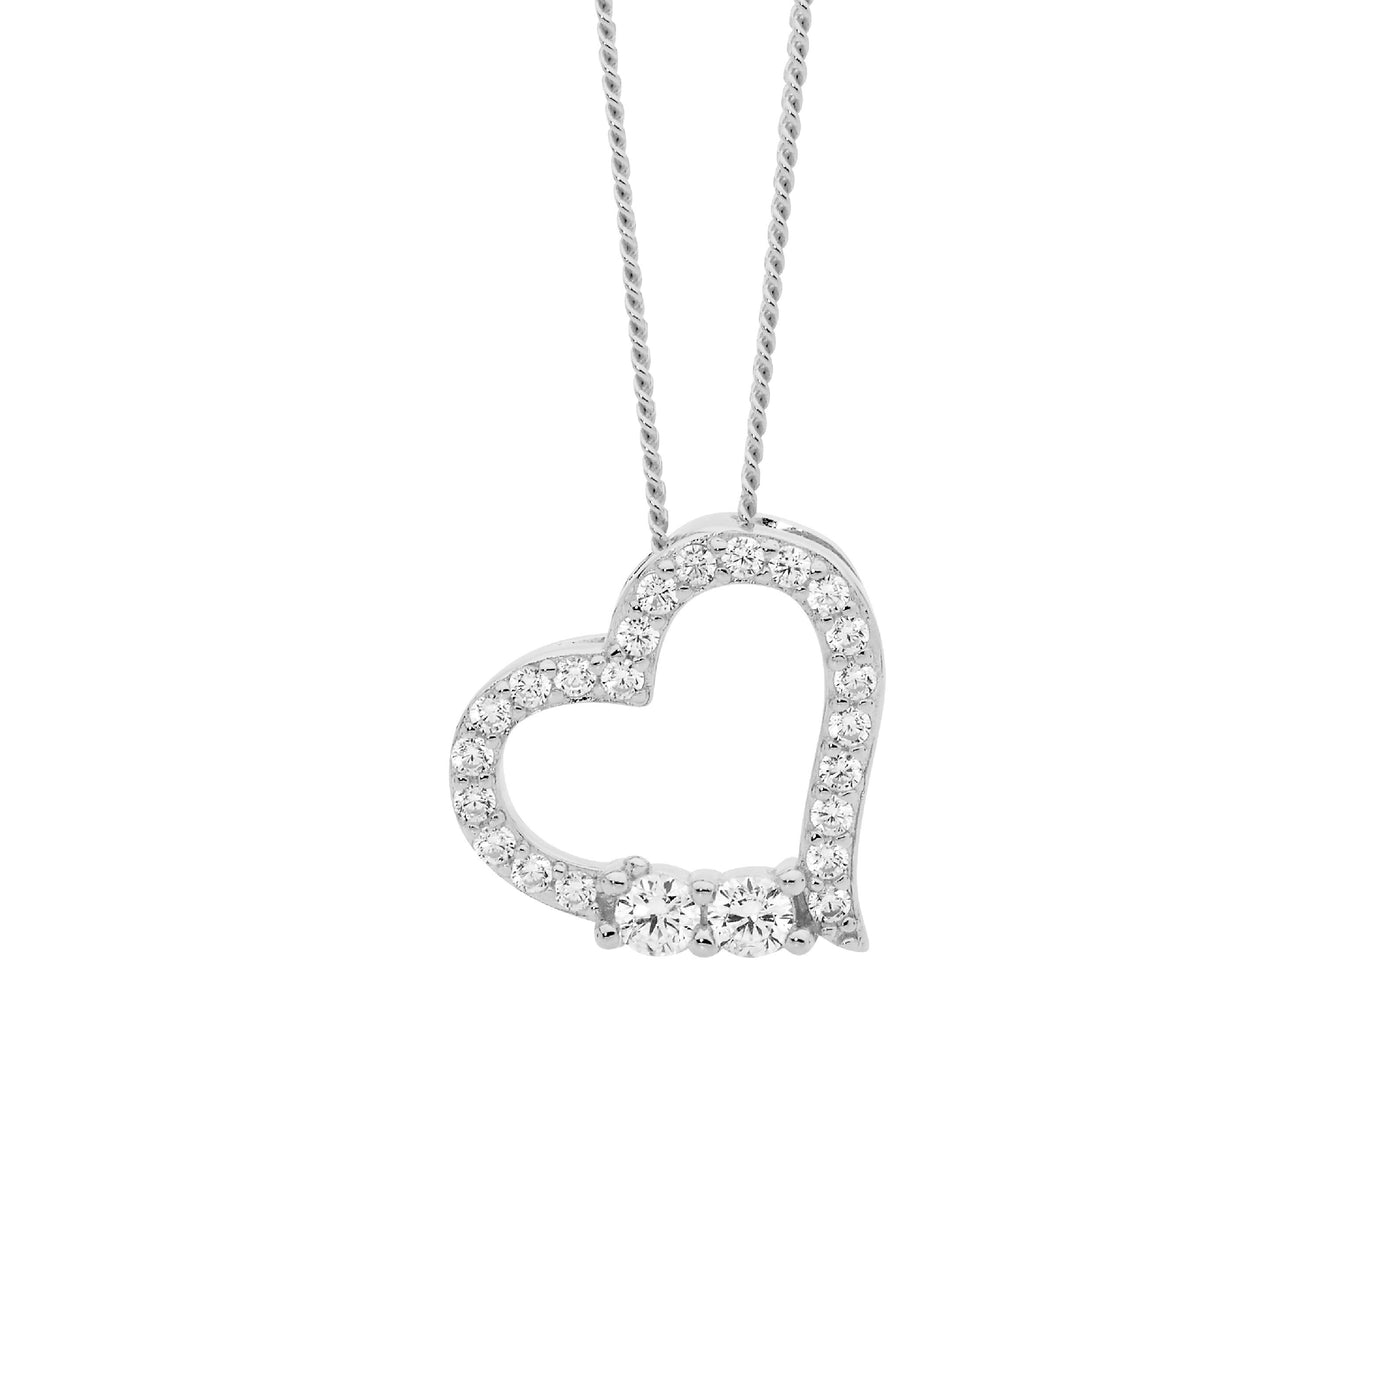 Sterling Silver open heart pendant